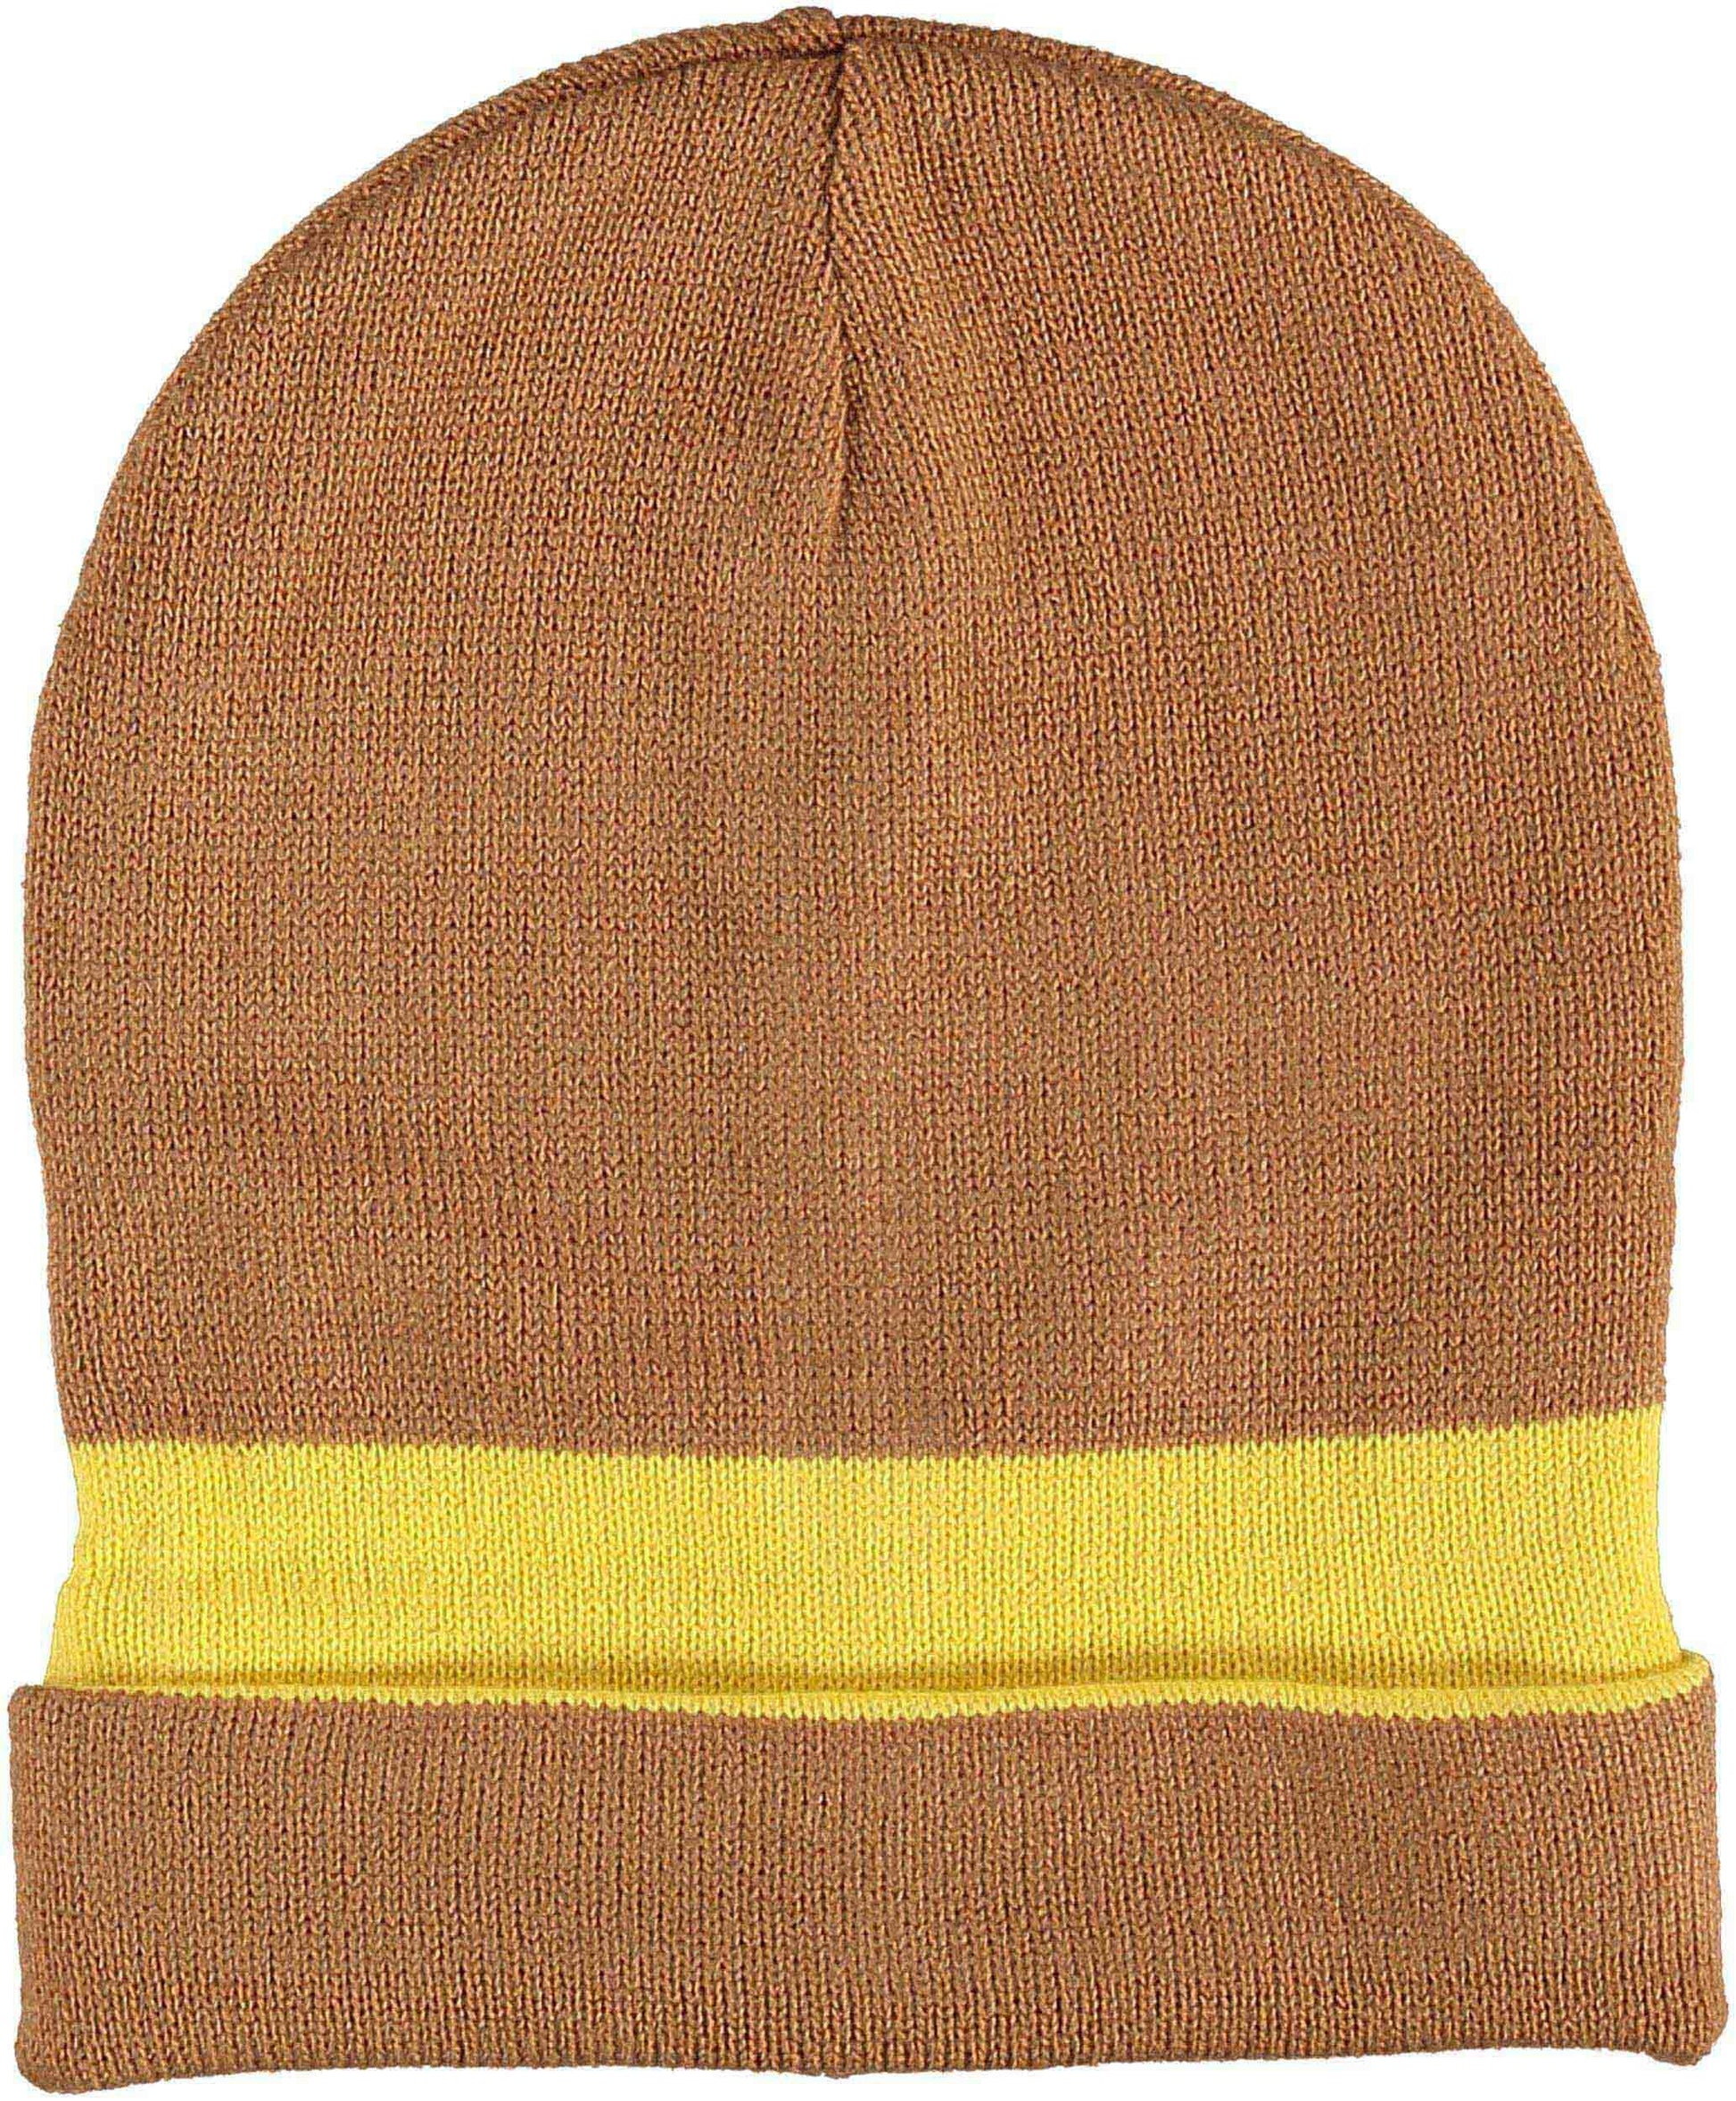 Mütze PC-Mütze (Yellow)